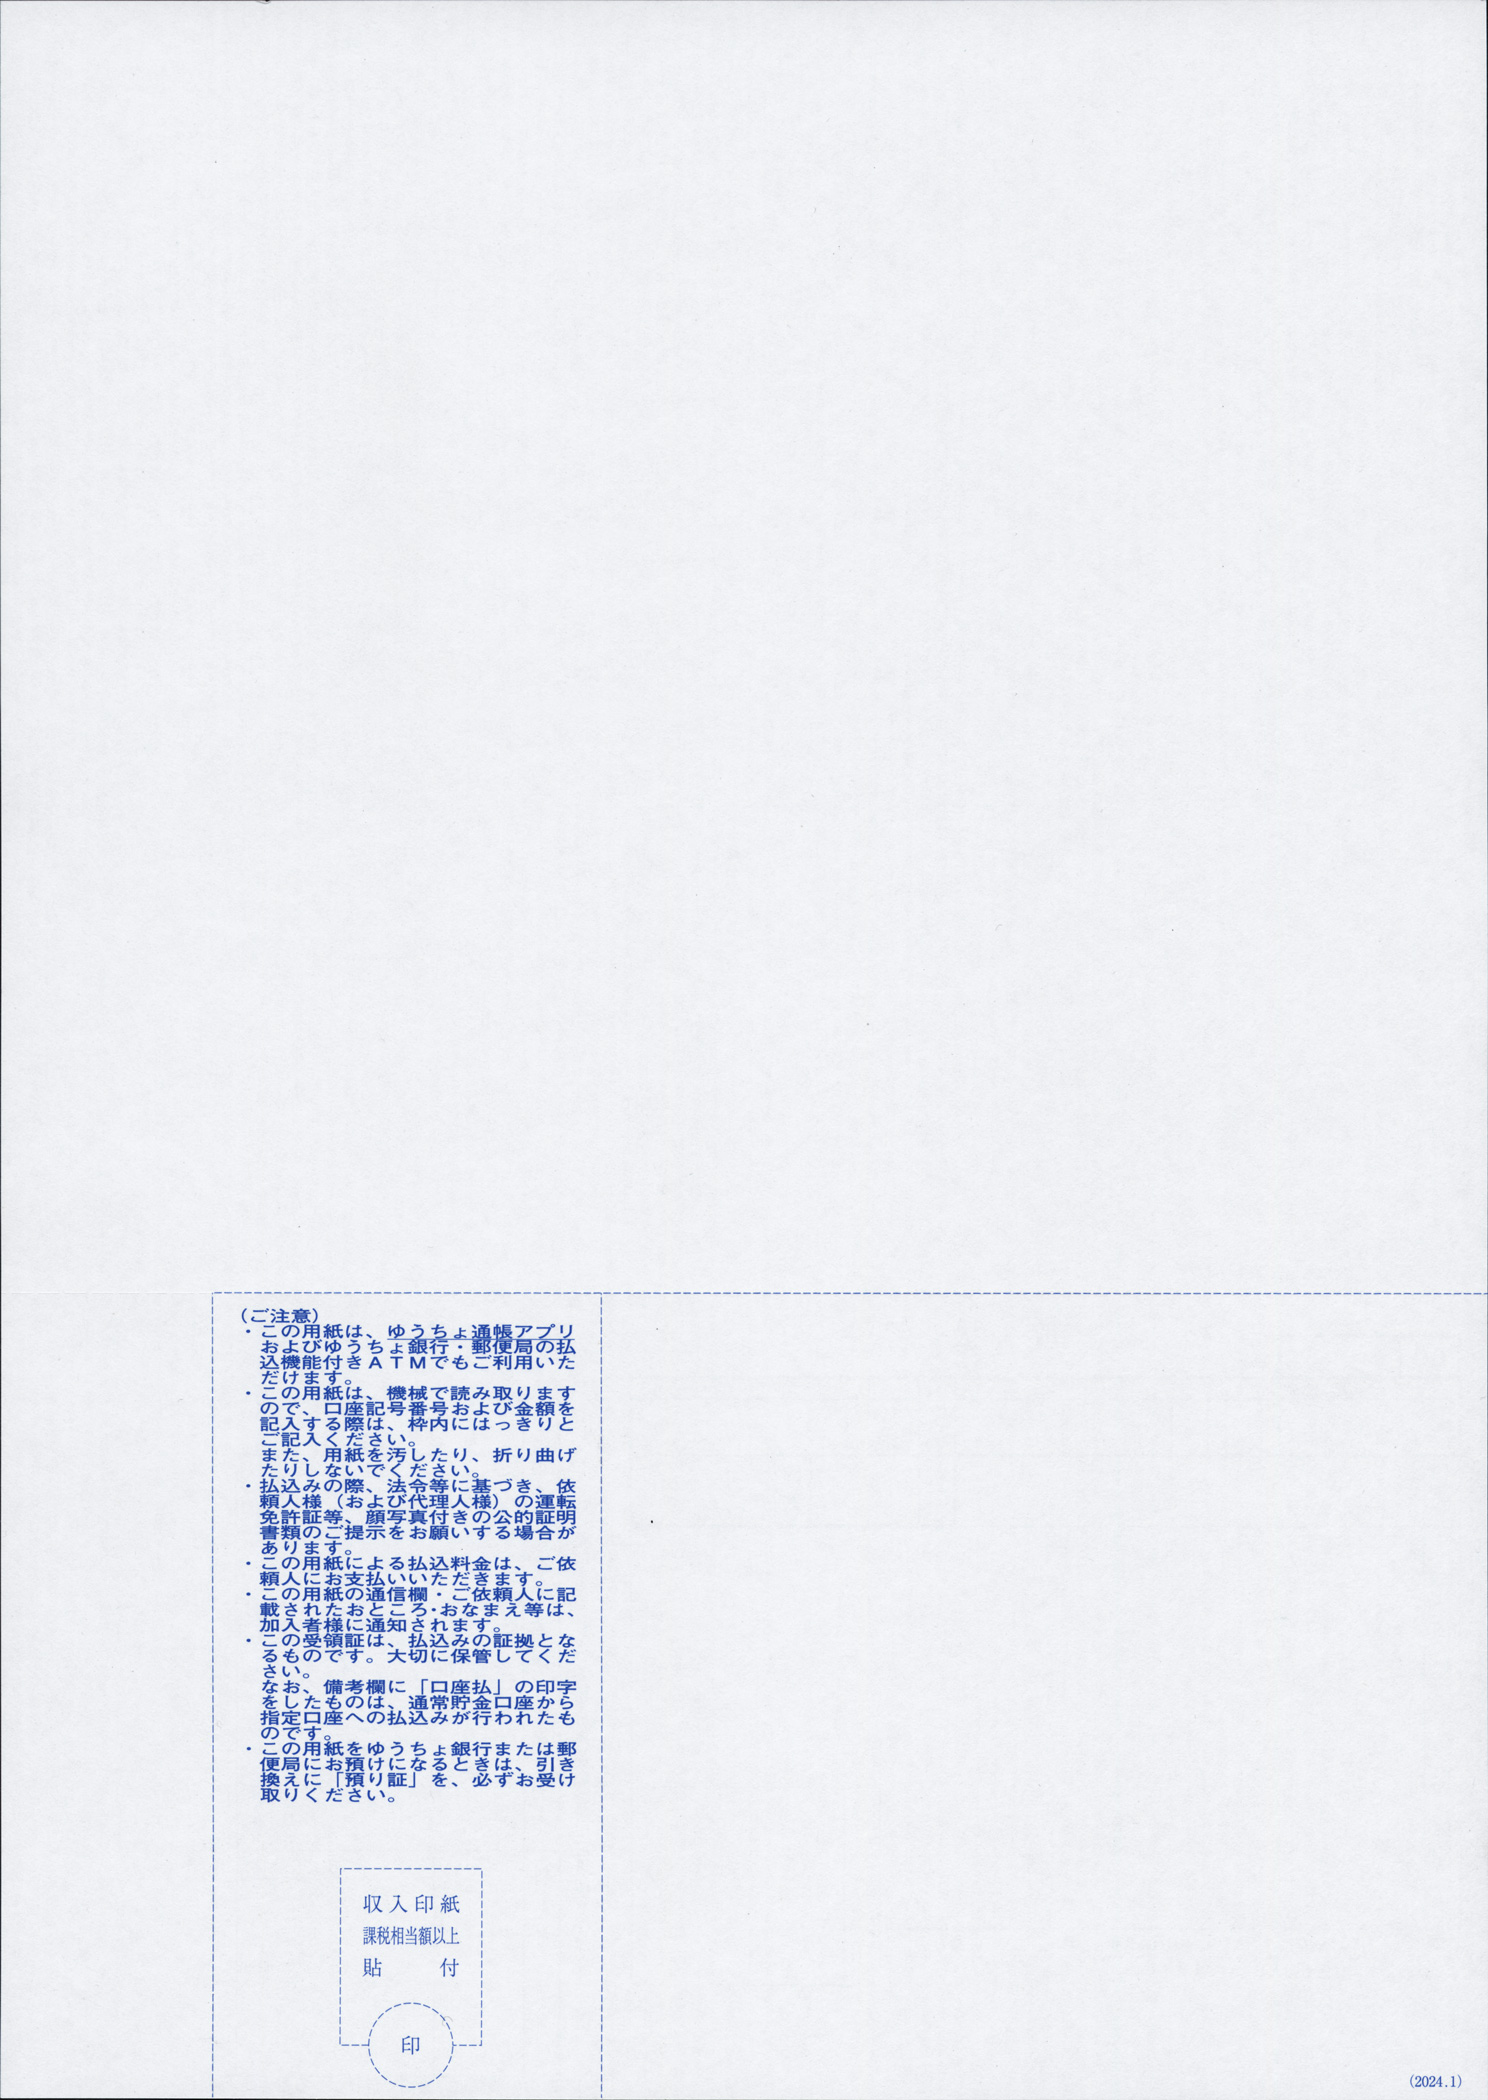 郵便振替払込書付A4プリンター用紙(払込人負担)青色 1,000枚画像